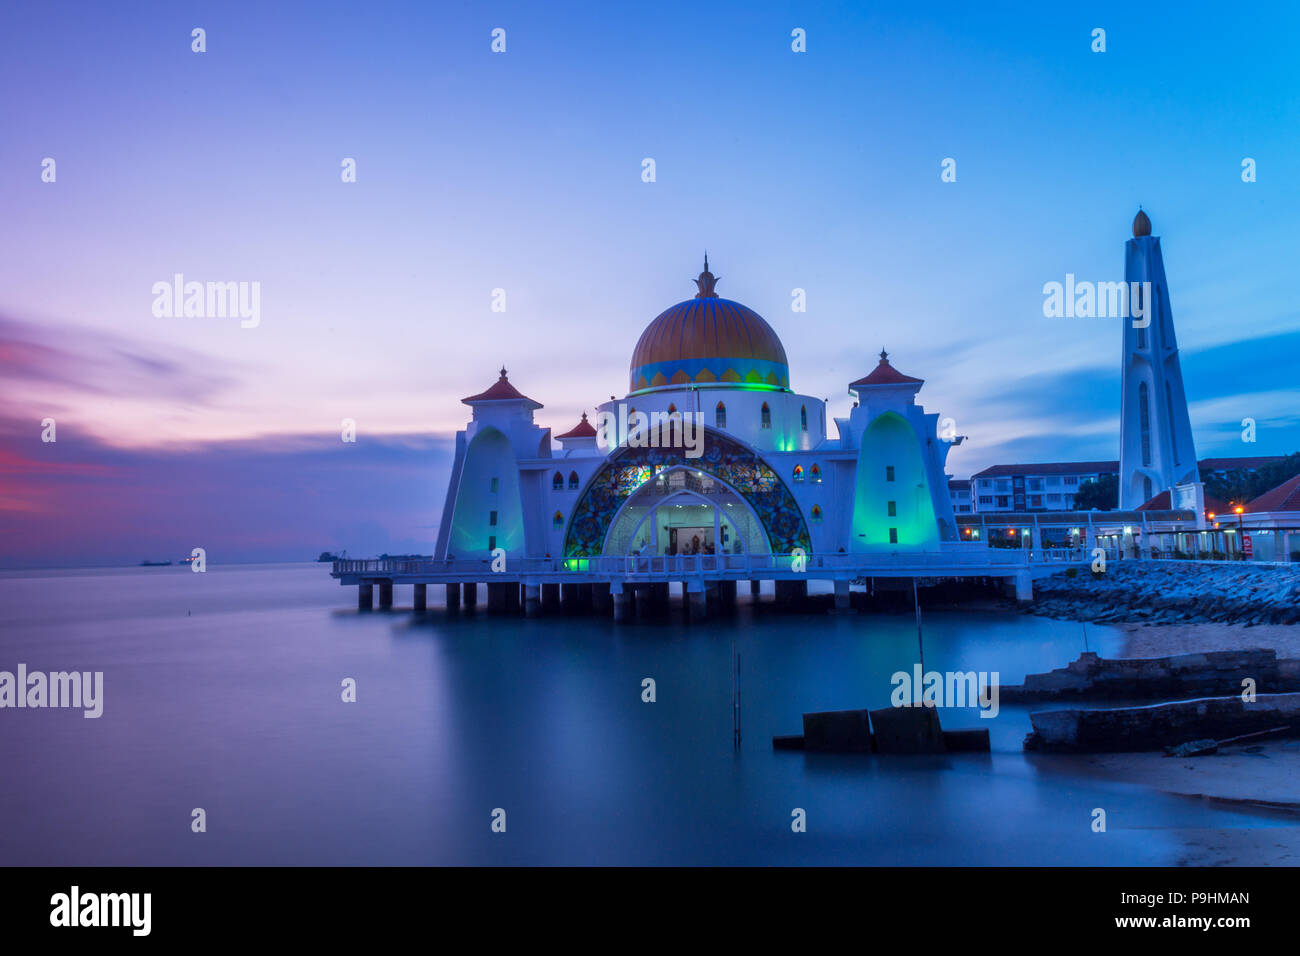 Melaka Straits Mosque, during sunset Stock Photo - Alamy